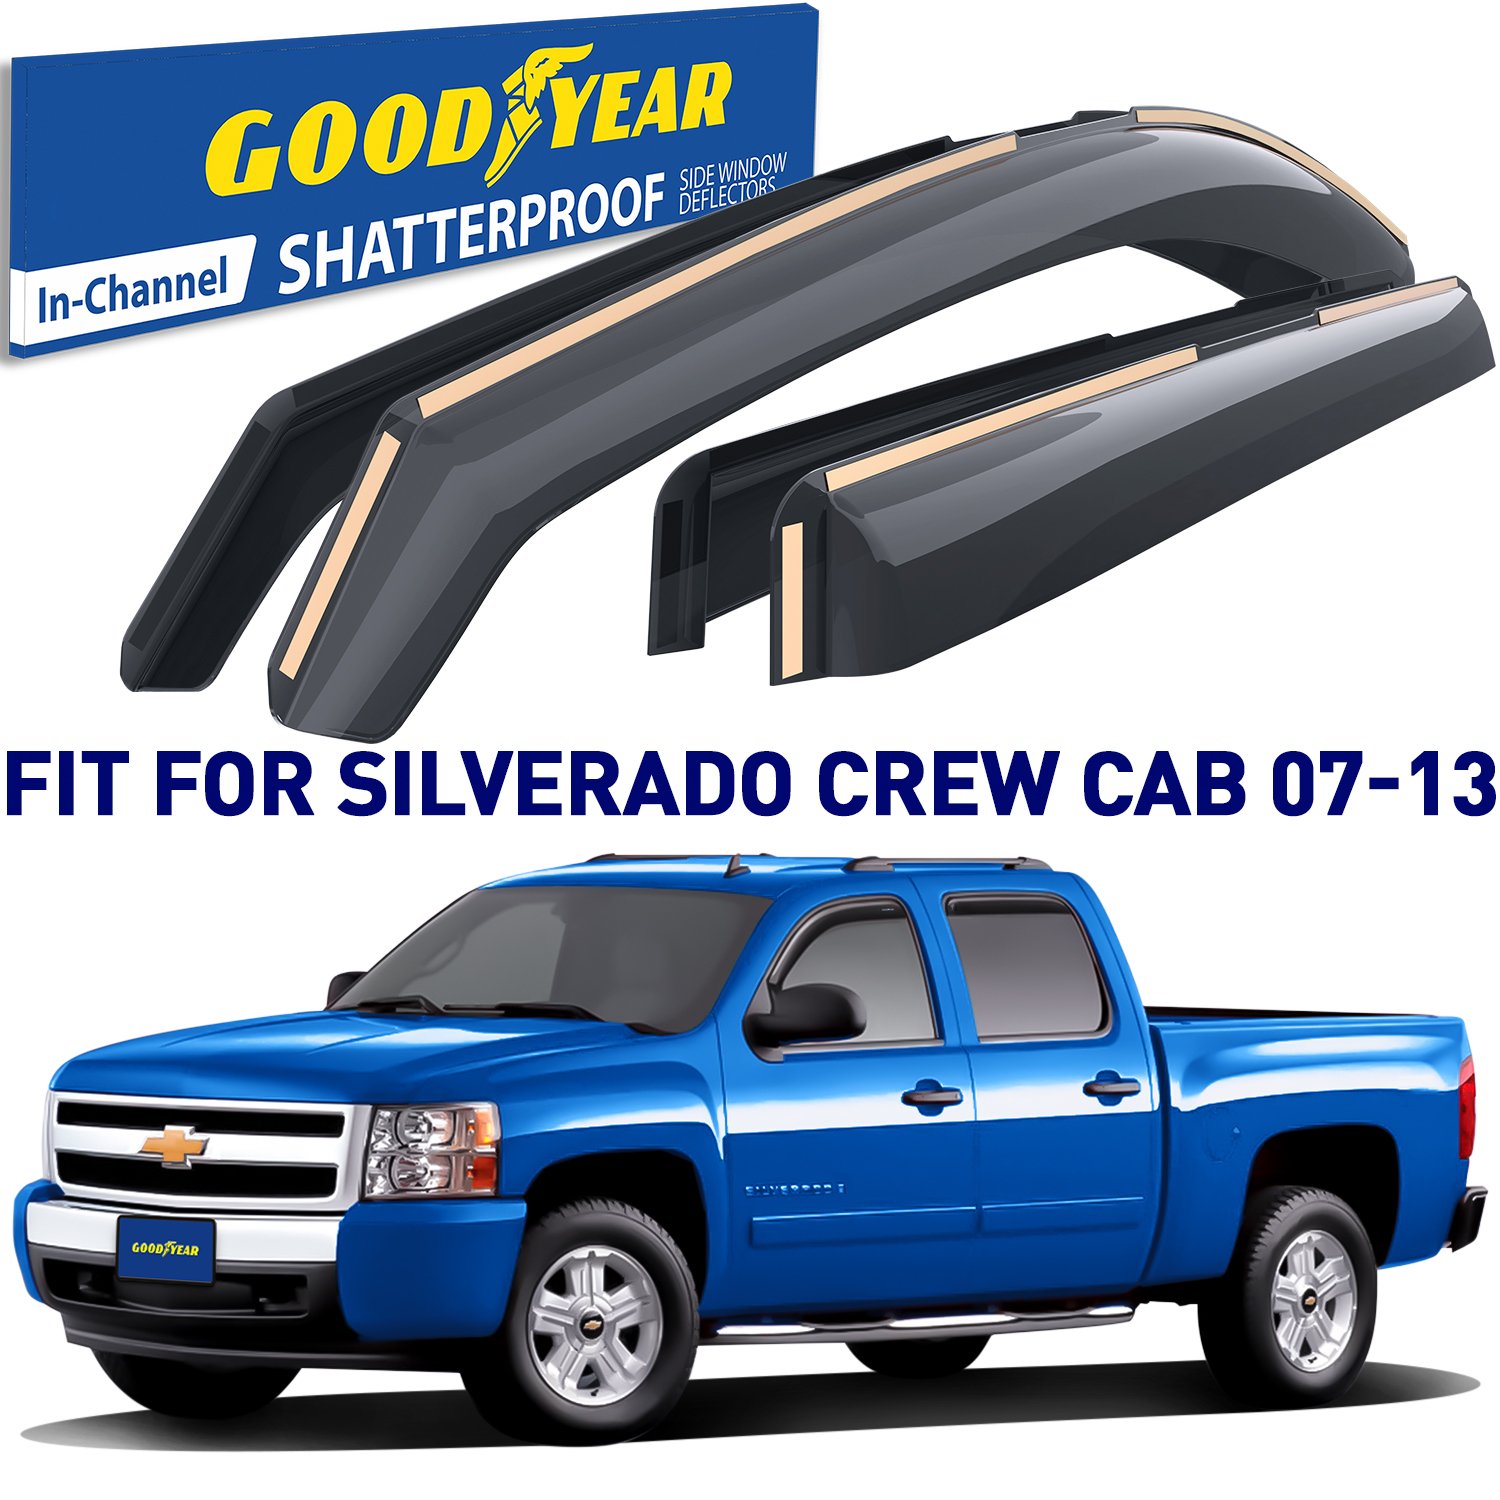 Goodyear Shatterproof Window Deflectors For 2007-2013 Chevrolet Silverado/GMC Sierra